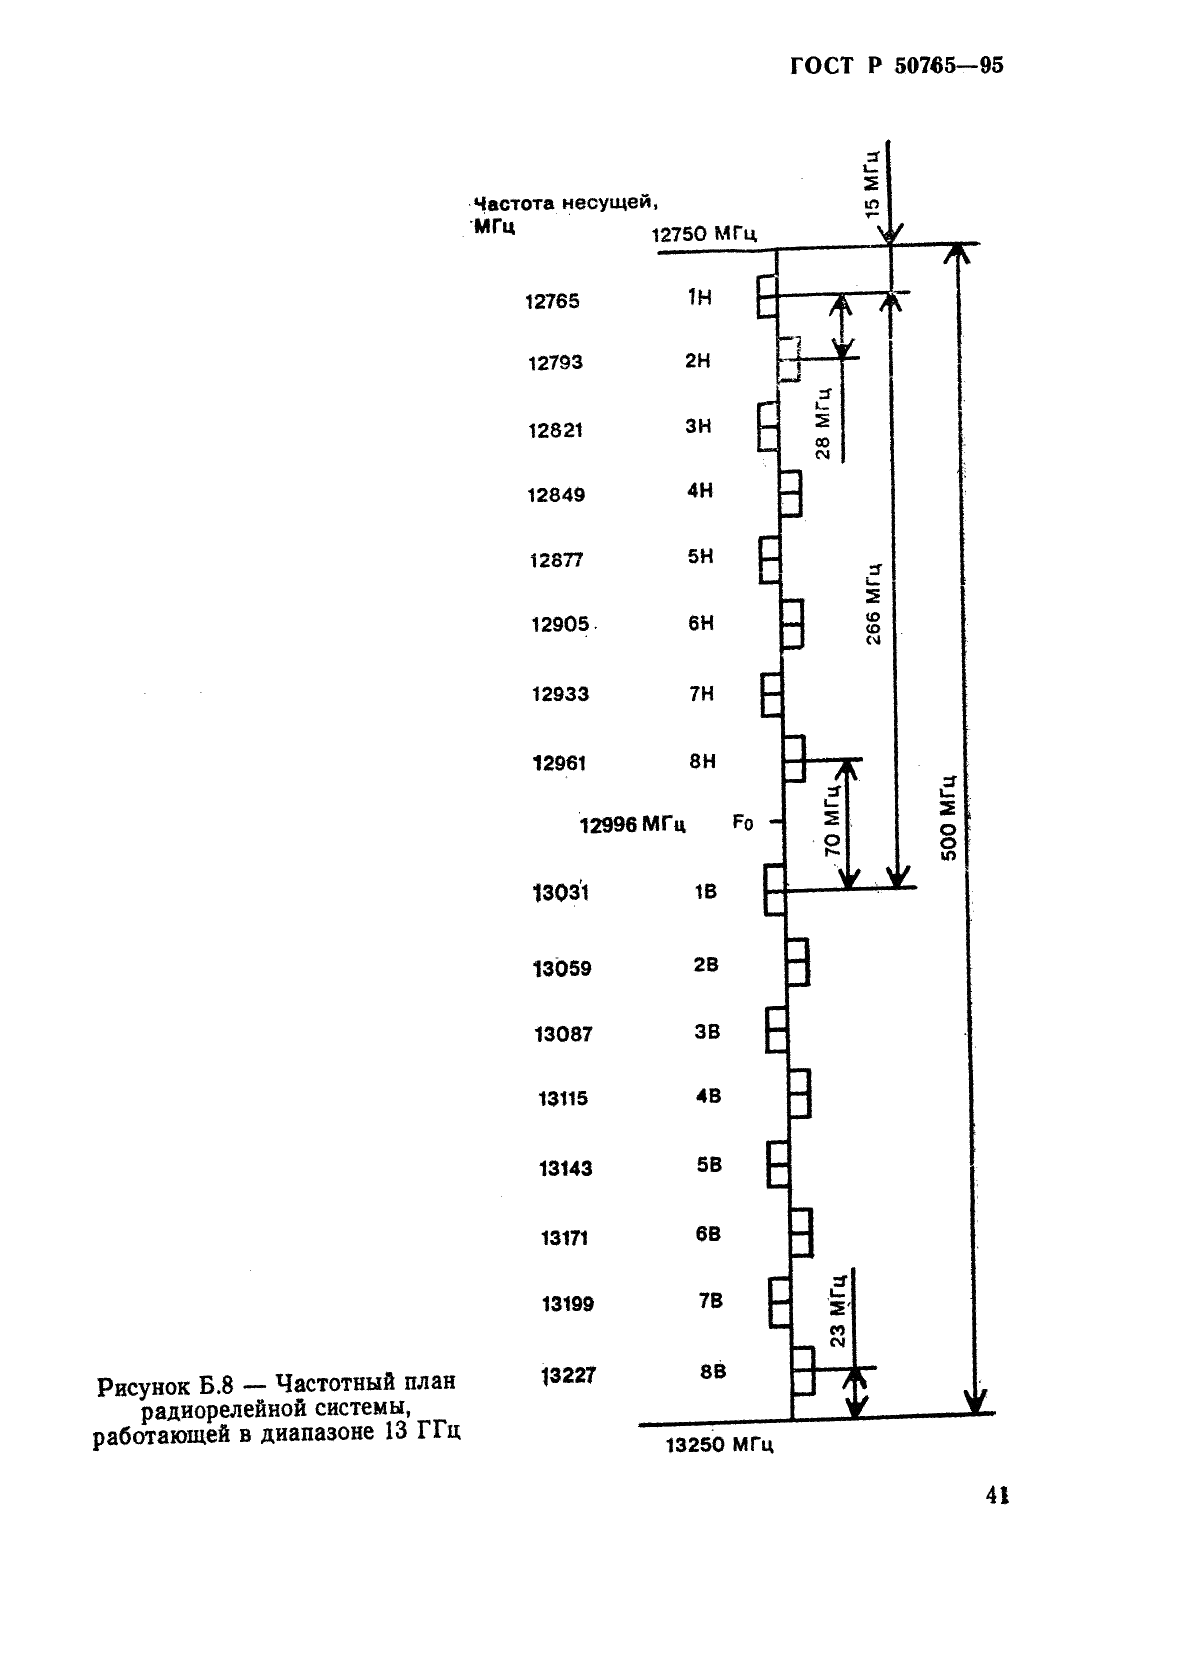 ГОСТ Р 50765-95 Аппаратура радиорелейная. Классификация. Основные параметры цепей стыка (фото 44 из 62)